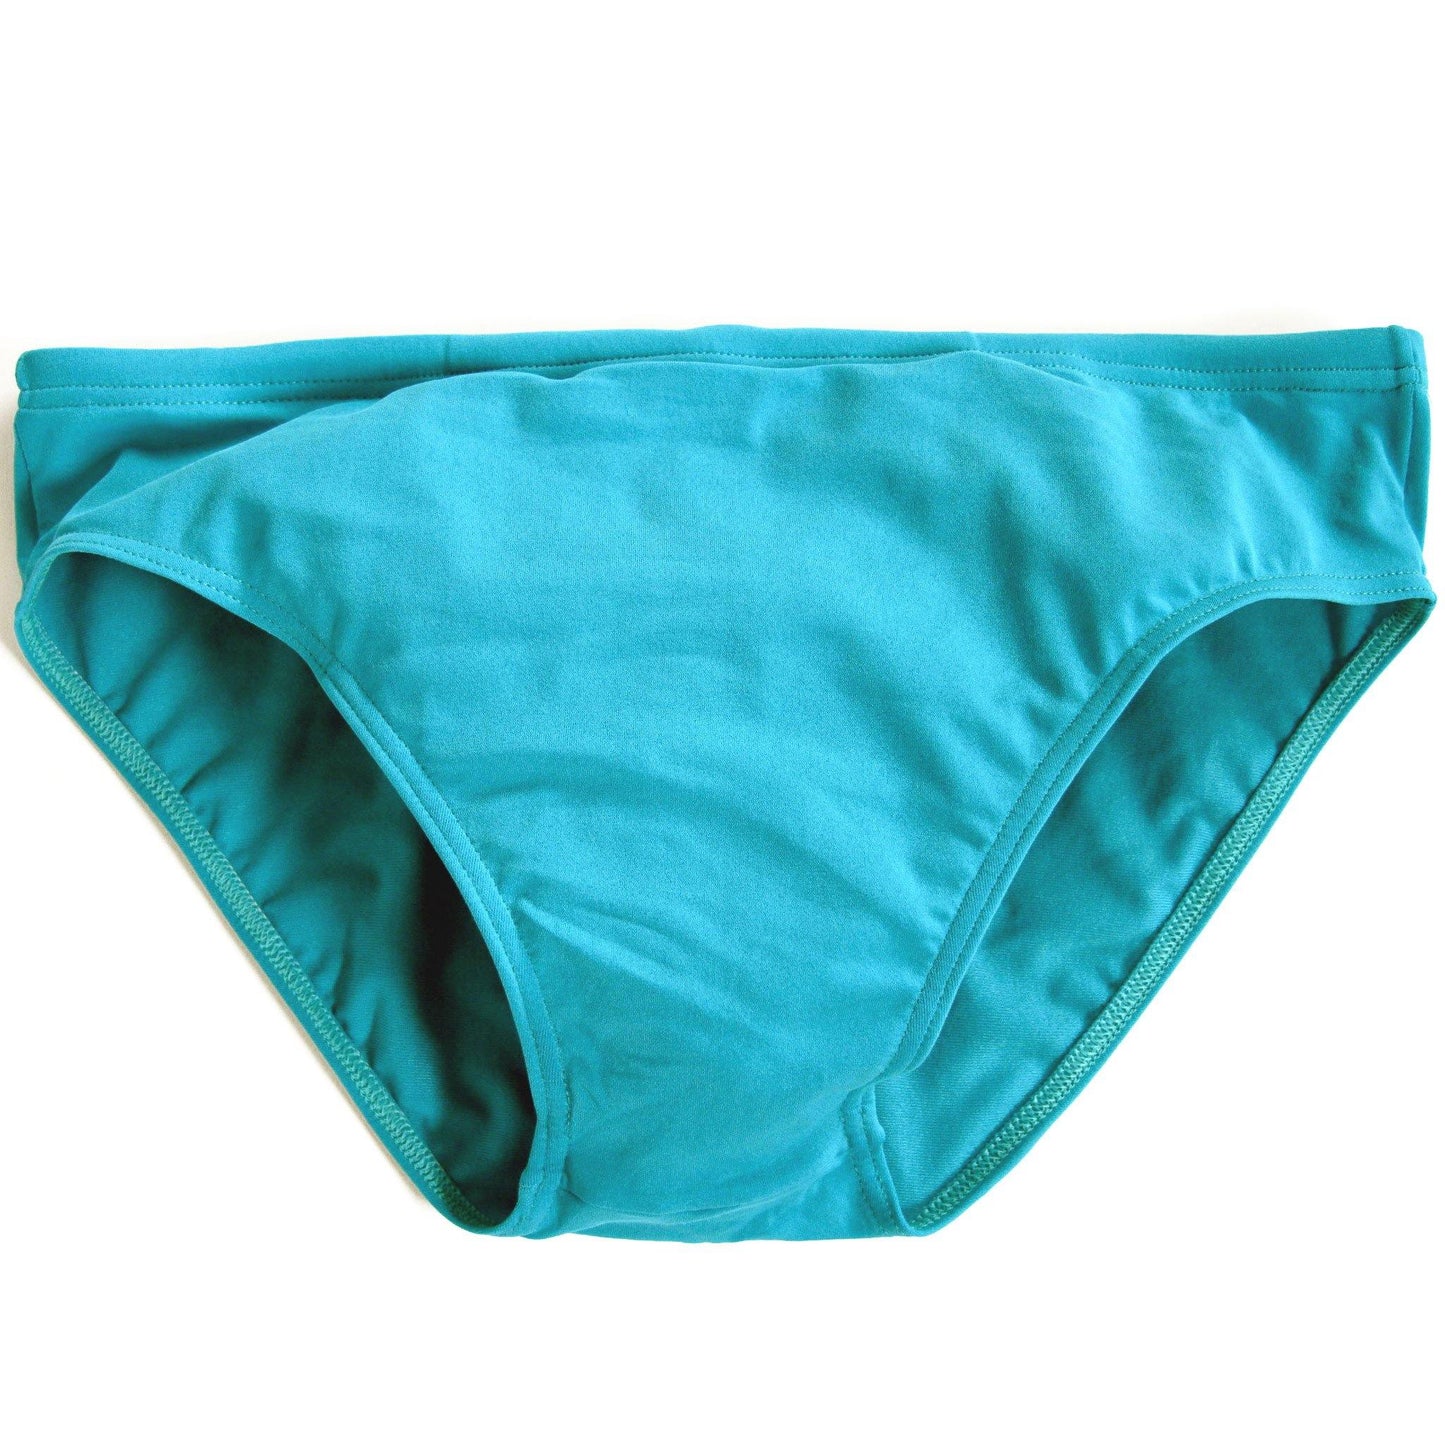 CIRCA75 Men's Swim Brief - Turquoise | CIRCA75.